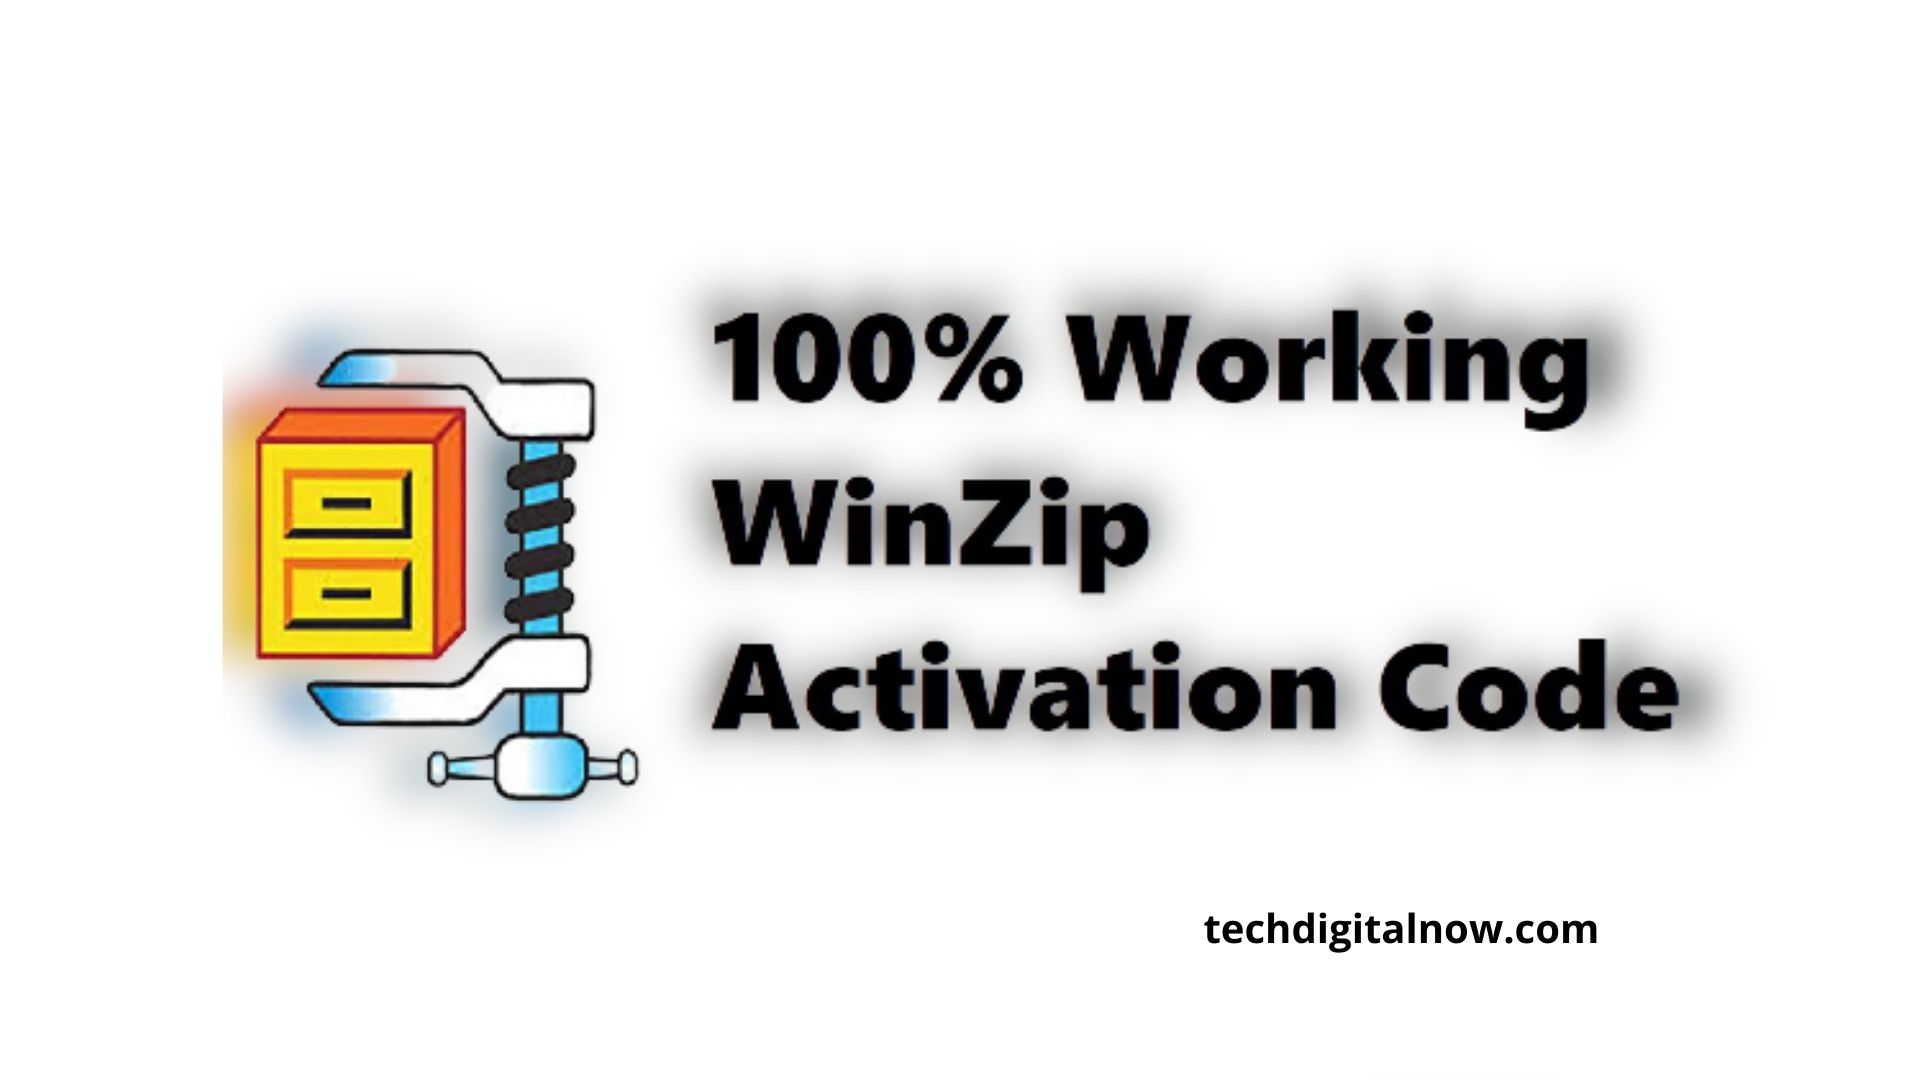 winzip 15.5 activation code free download